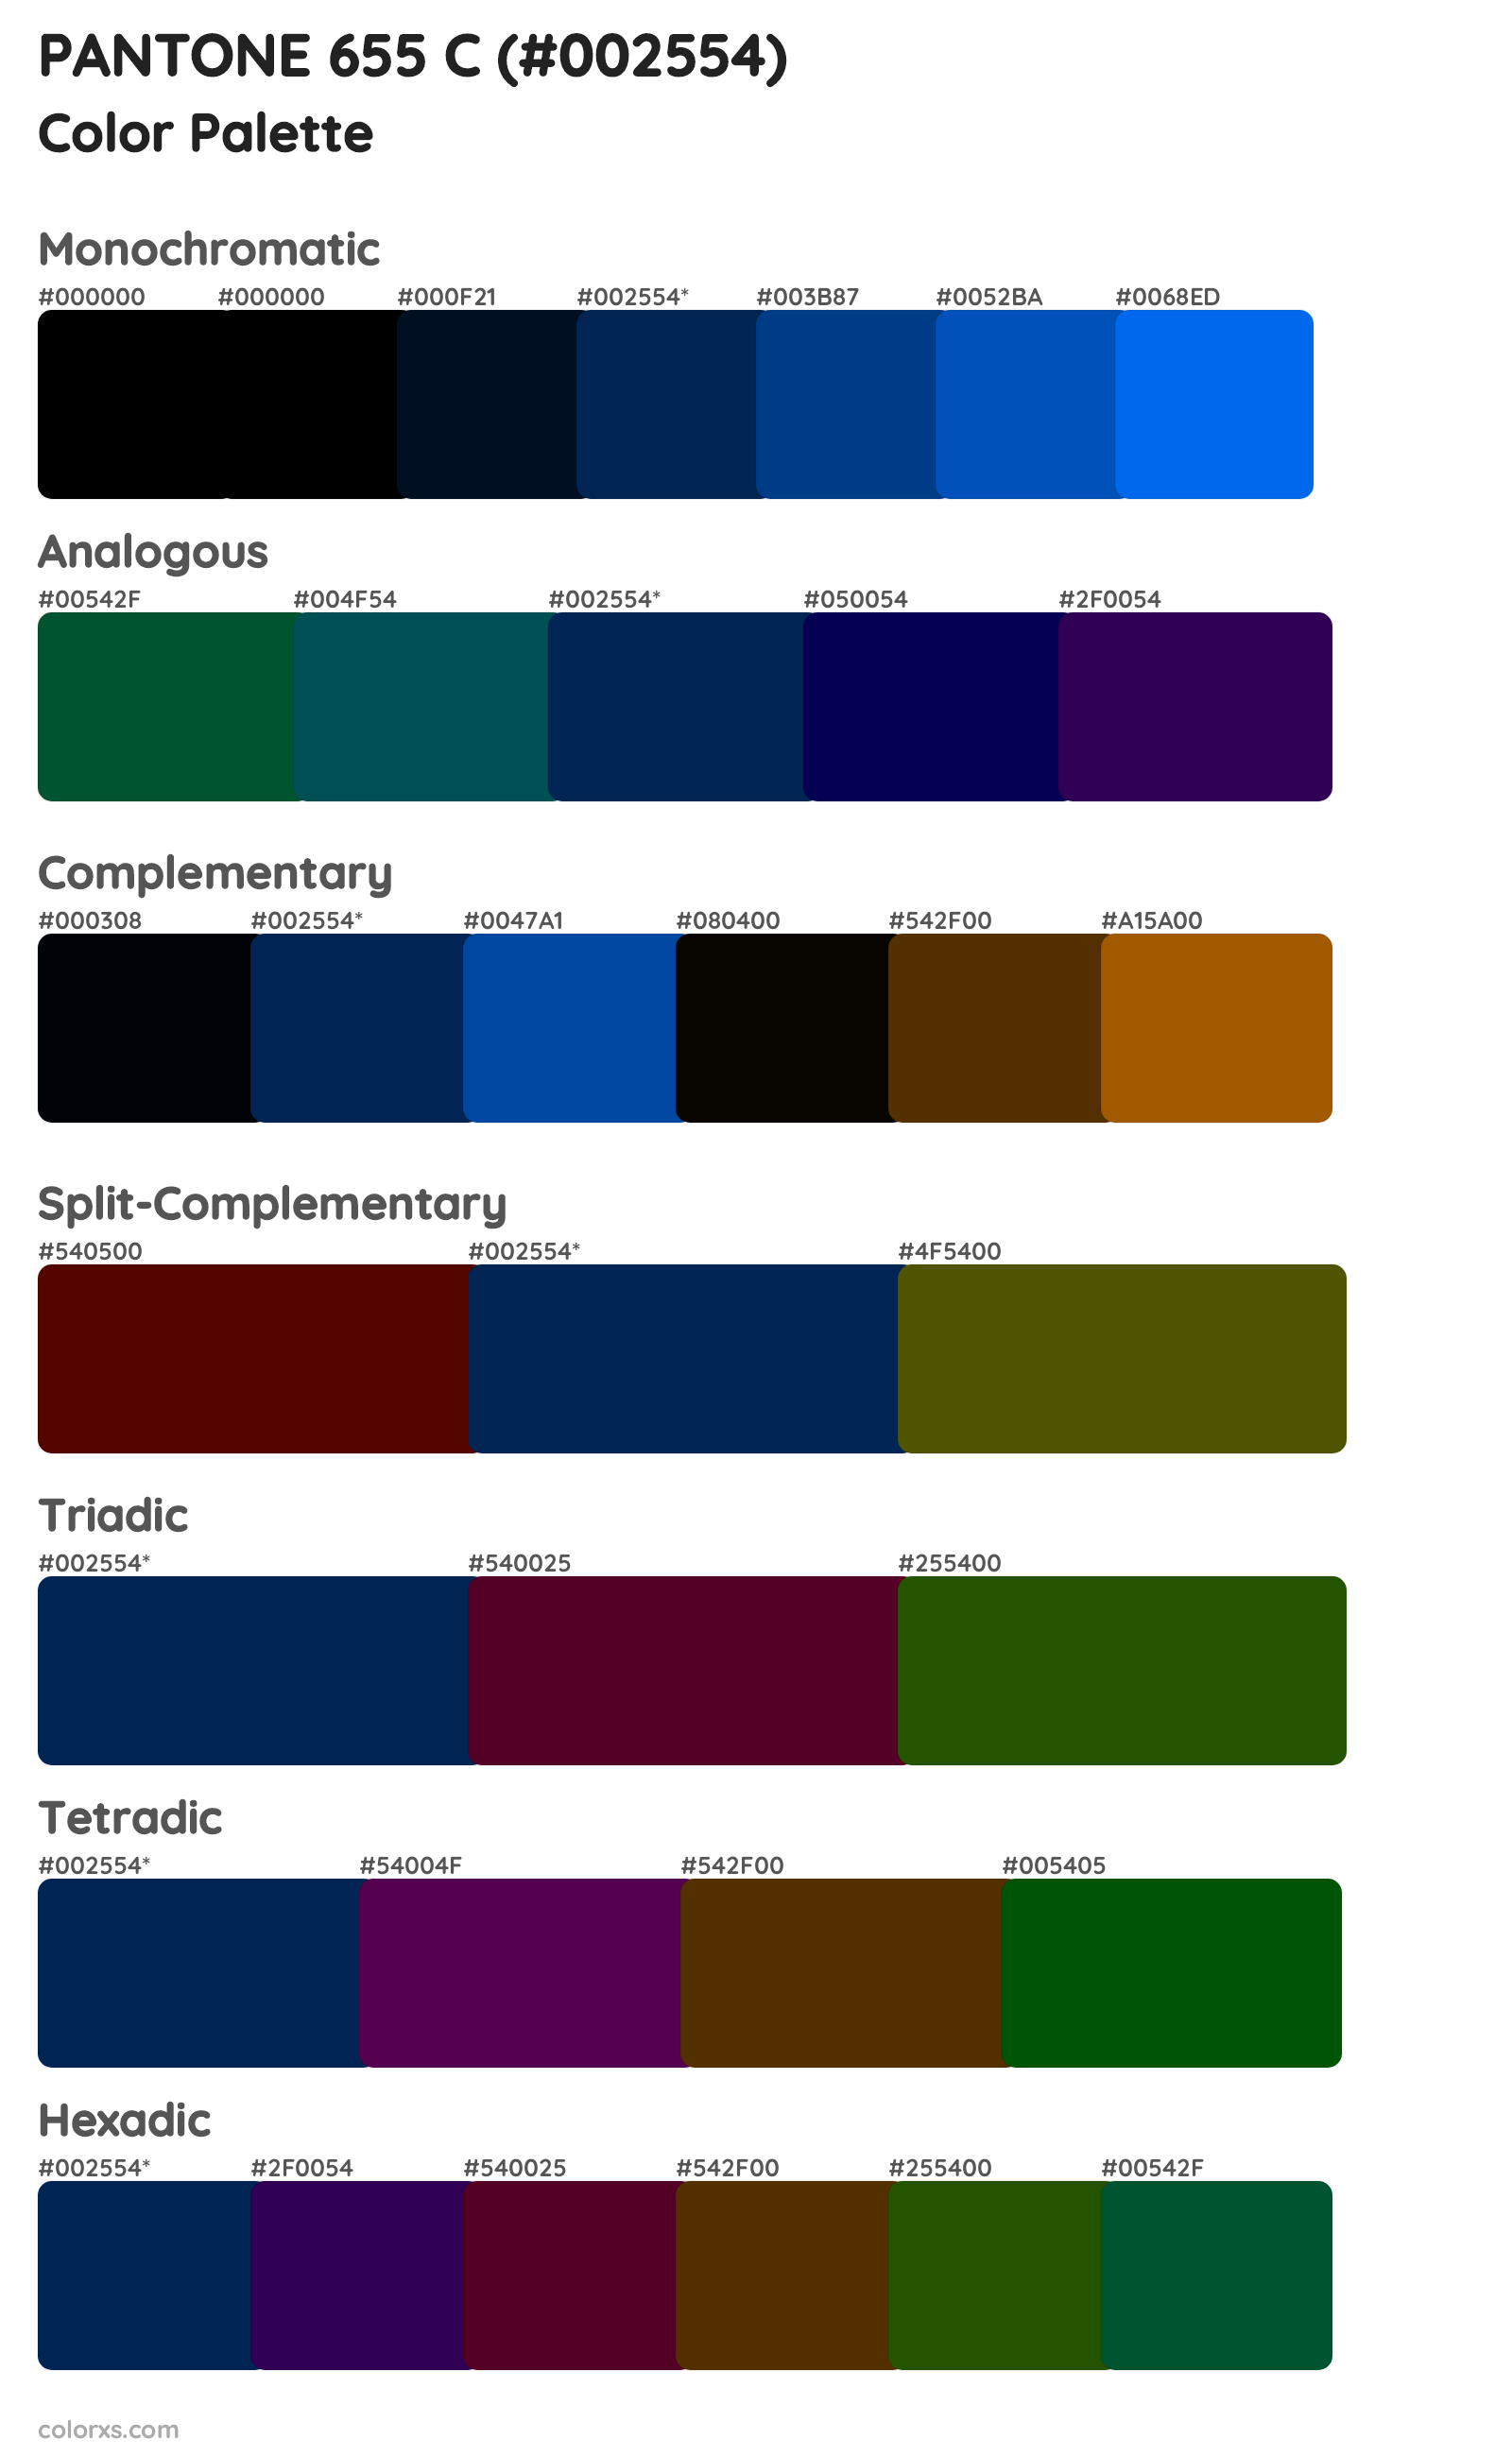 PANTONE 655 C Color Scheme Palettes